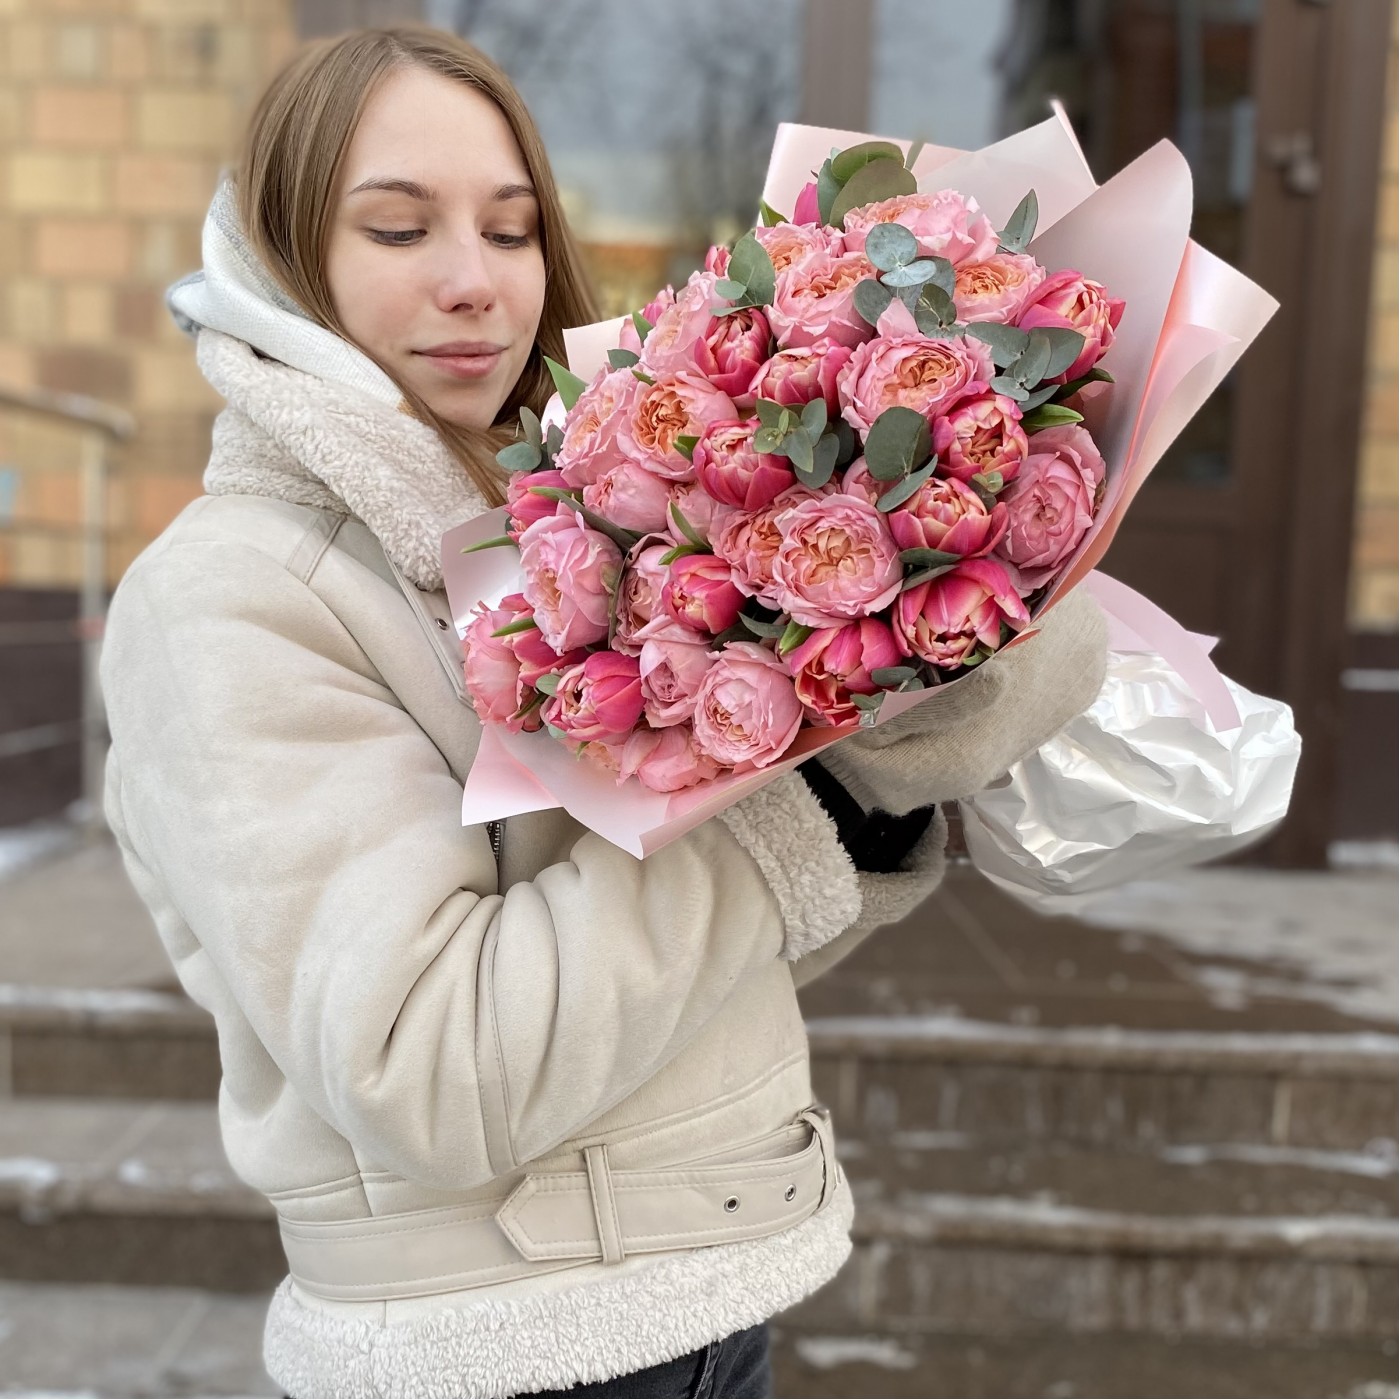 Дуэт пионовидных кустовых роз Джульетта и розовых тюльпанов